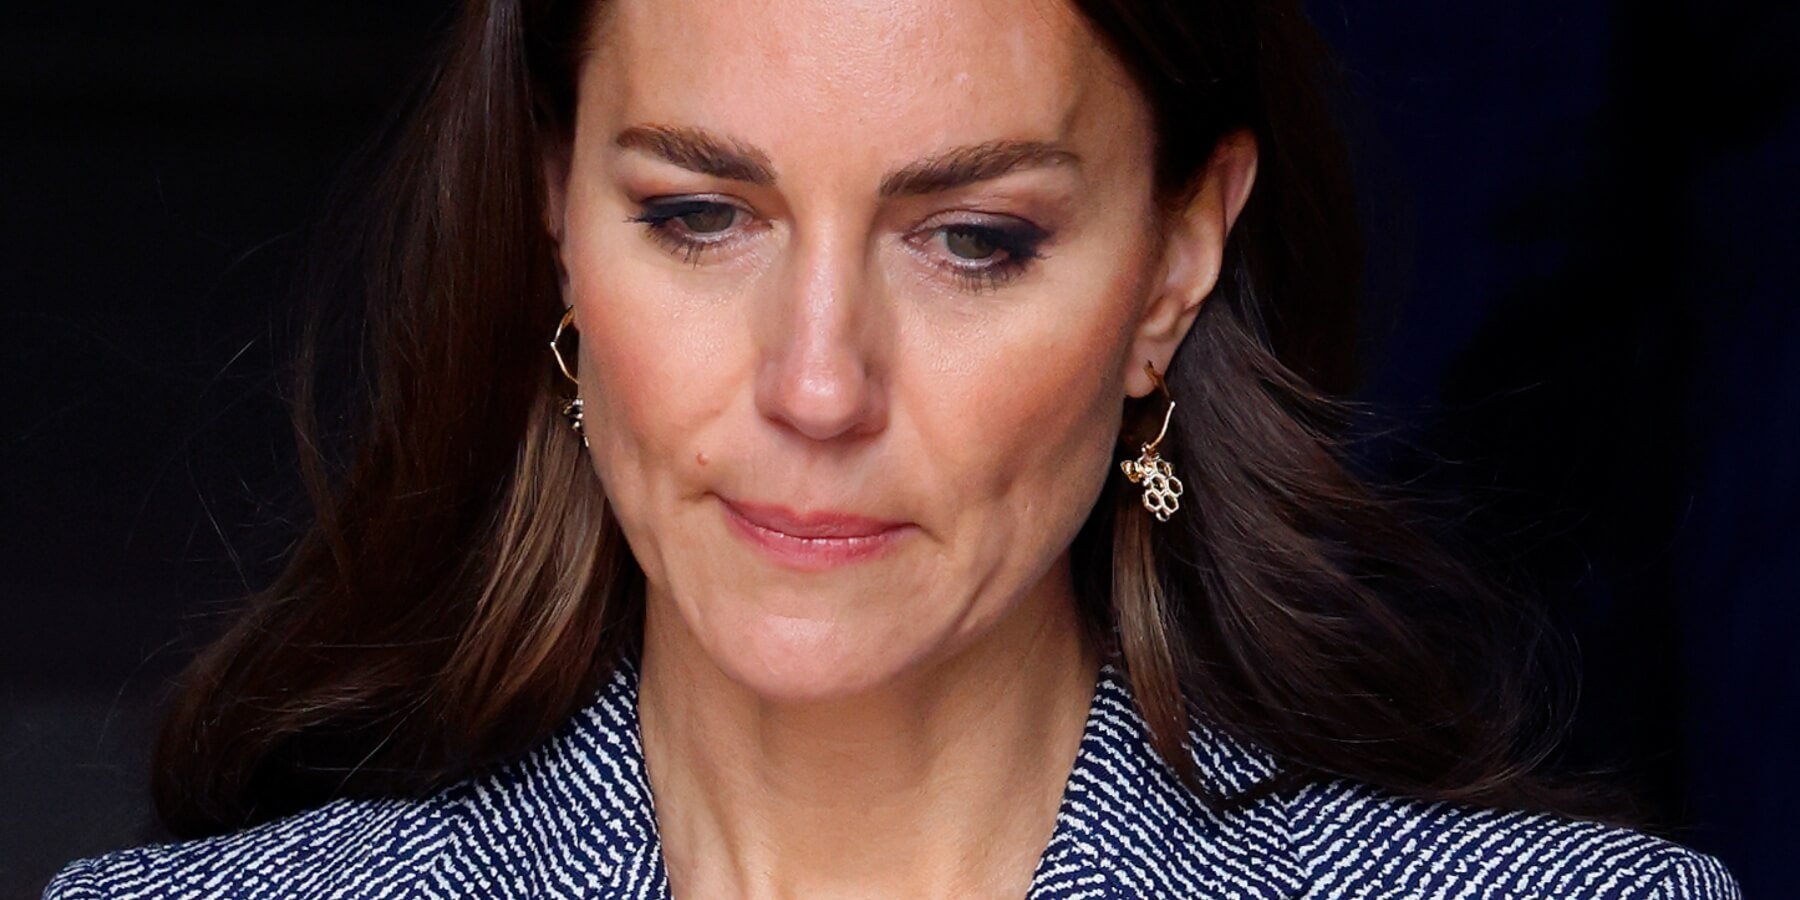 Kate Middleton ‘Taking the Fall’ For Royal Family’s ‘Cataclysmic Error’: Commentators